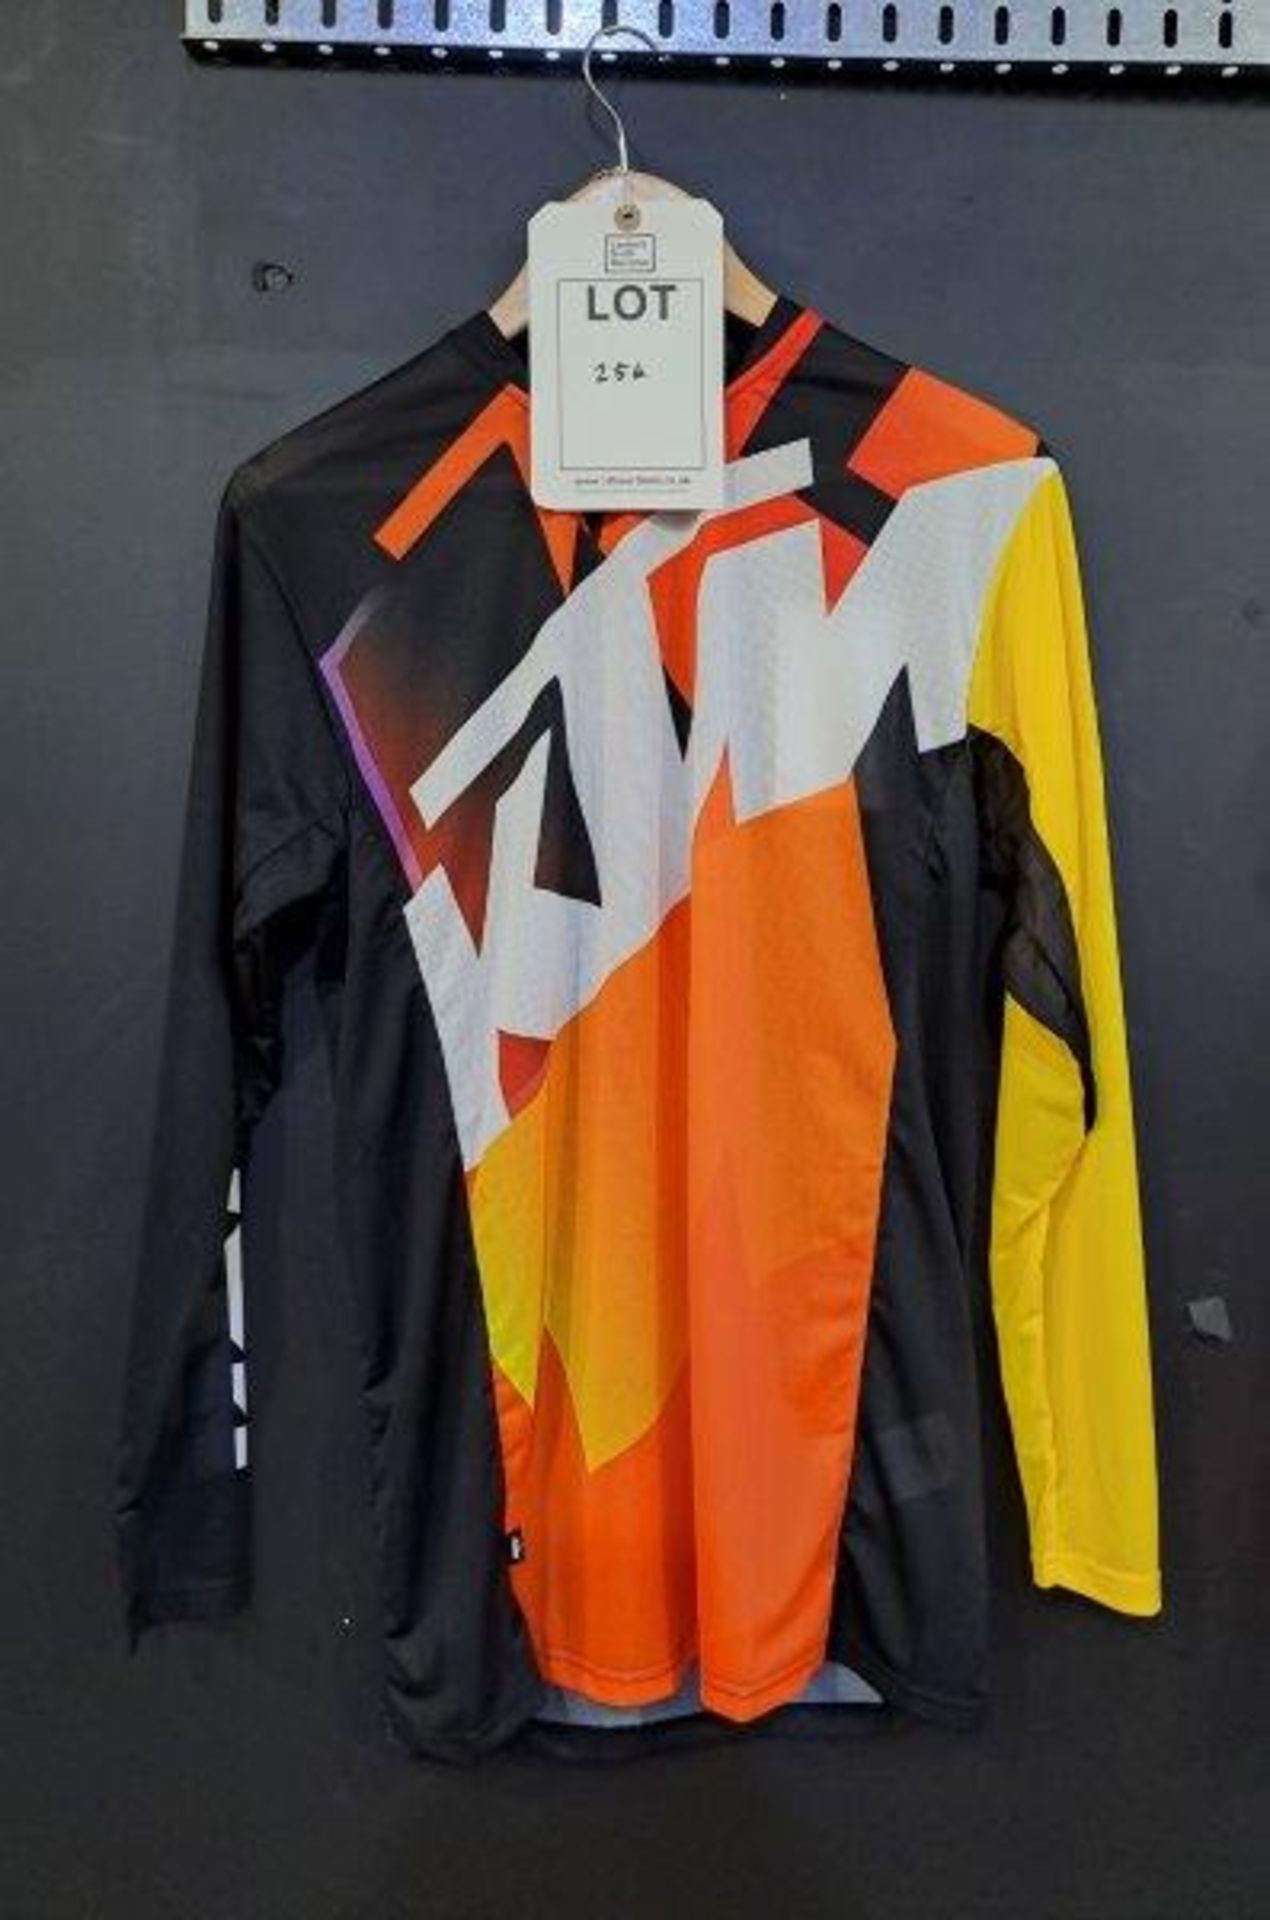 KTM Fashion Clothing - Image 5 of 11